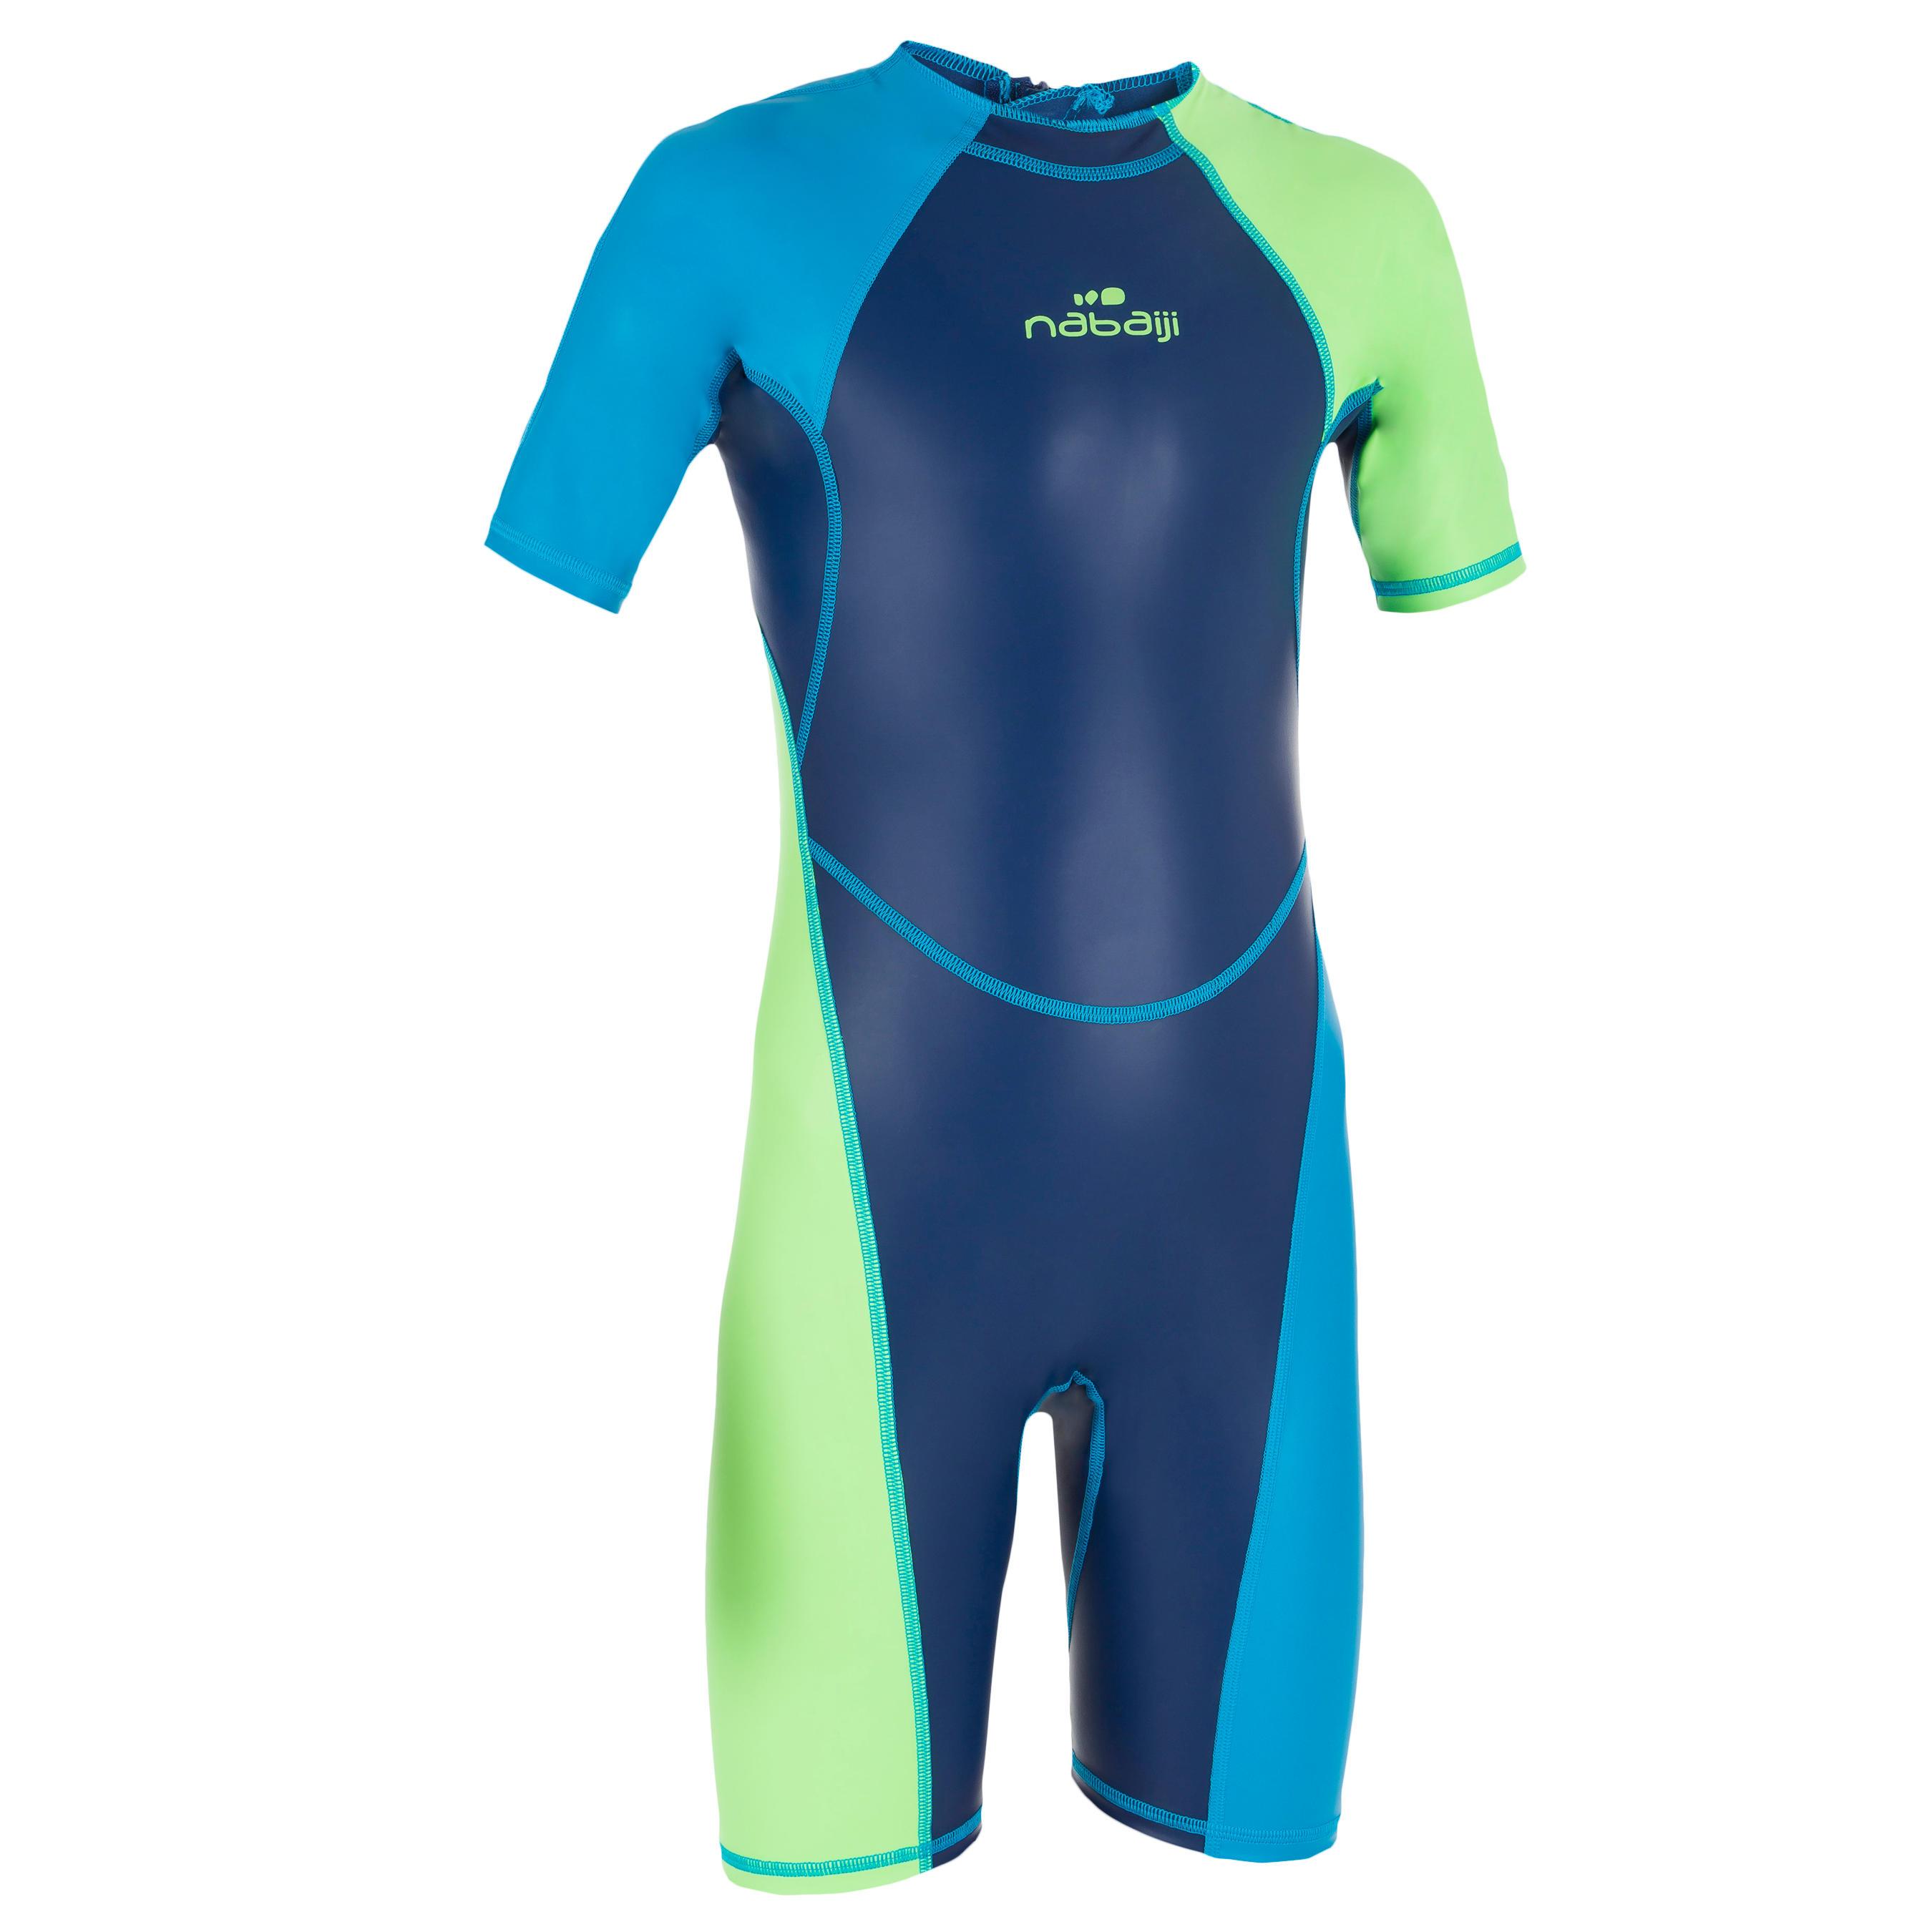 [ด่วน!! โปรโมชั่นมีจำนวนจำกัด] ชุดว่ายน้ำทรงขาสั้นสำหรับเด็กผู้ชายรุ่น KLOUPI (สีฟ้า/เขียว) สำหรับ ว่ายน้ำ